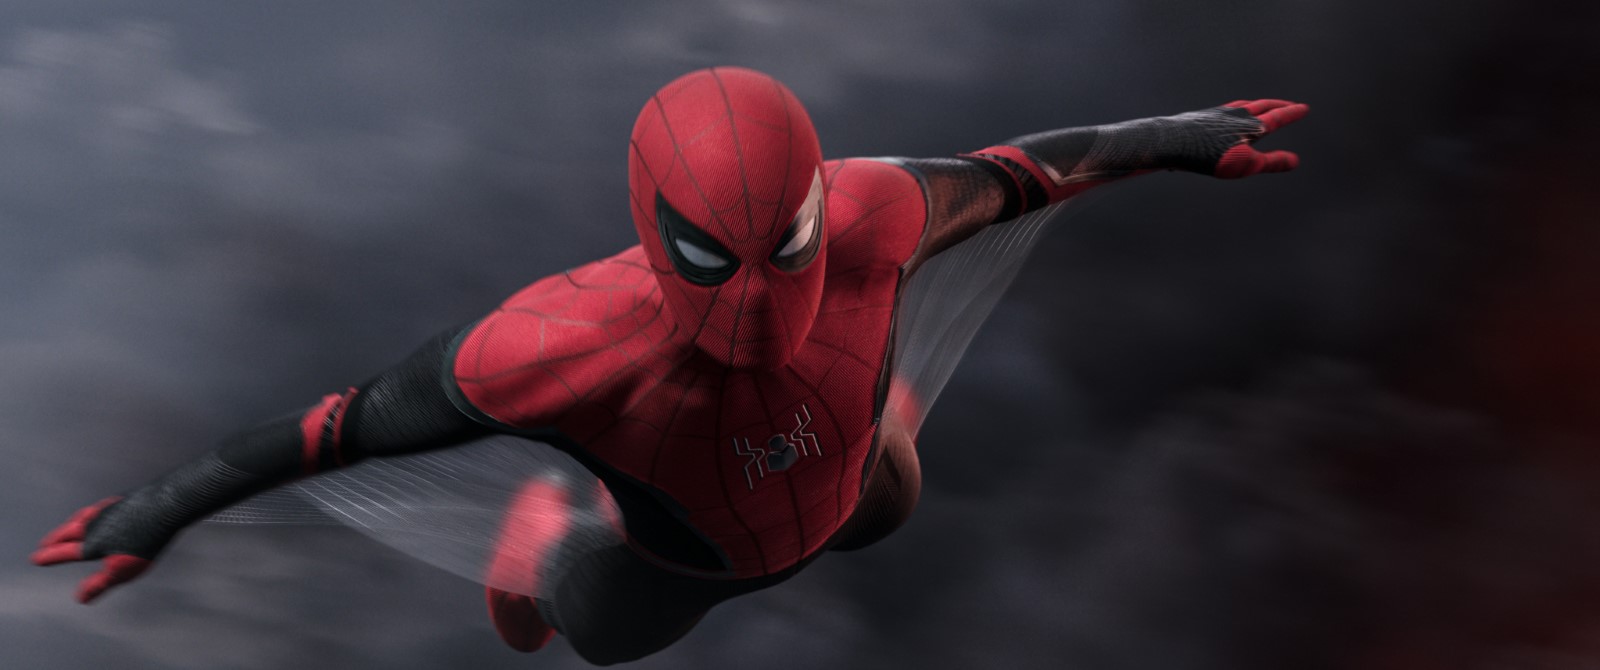 Spider-Man : les anciennes versions font partie du MCU